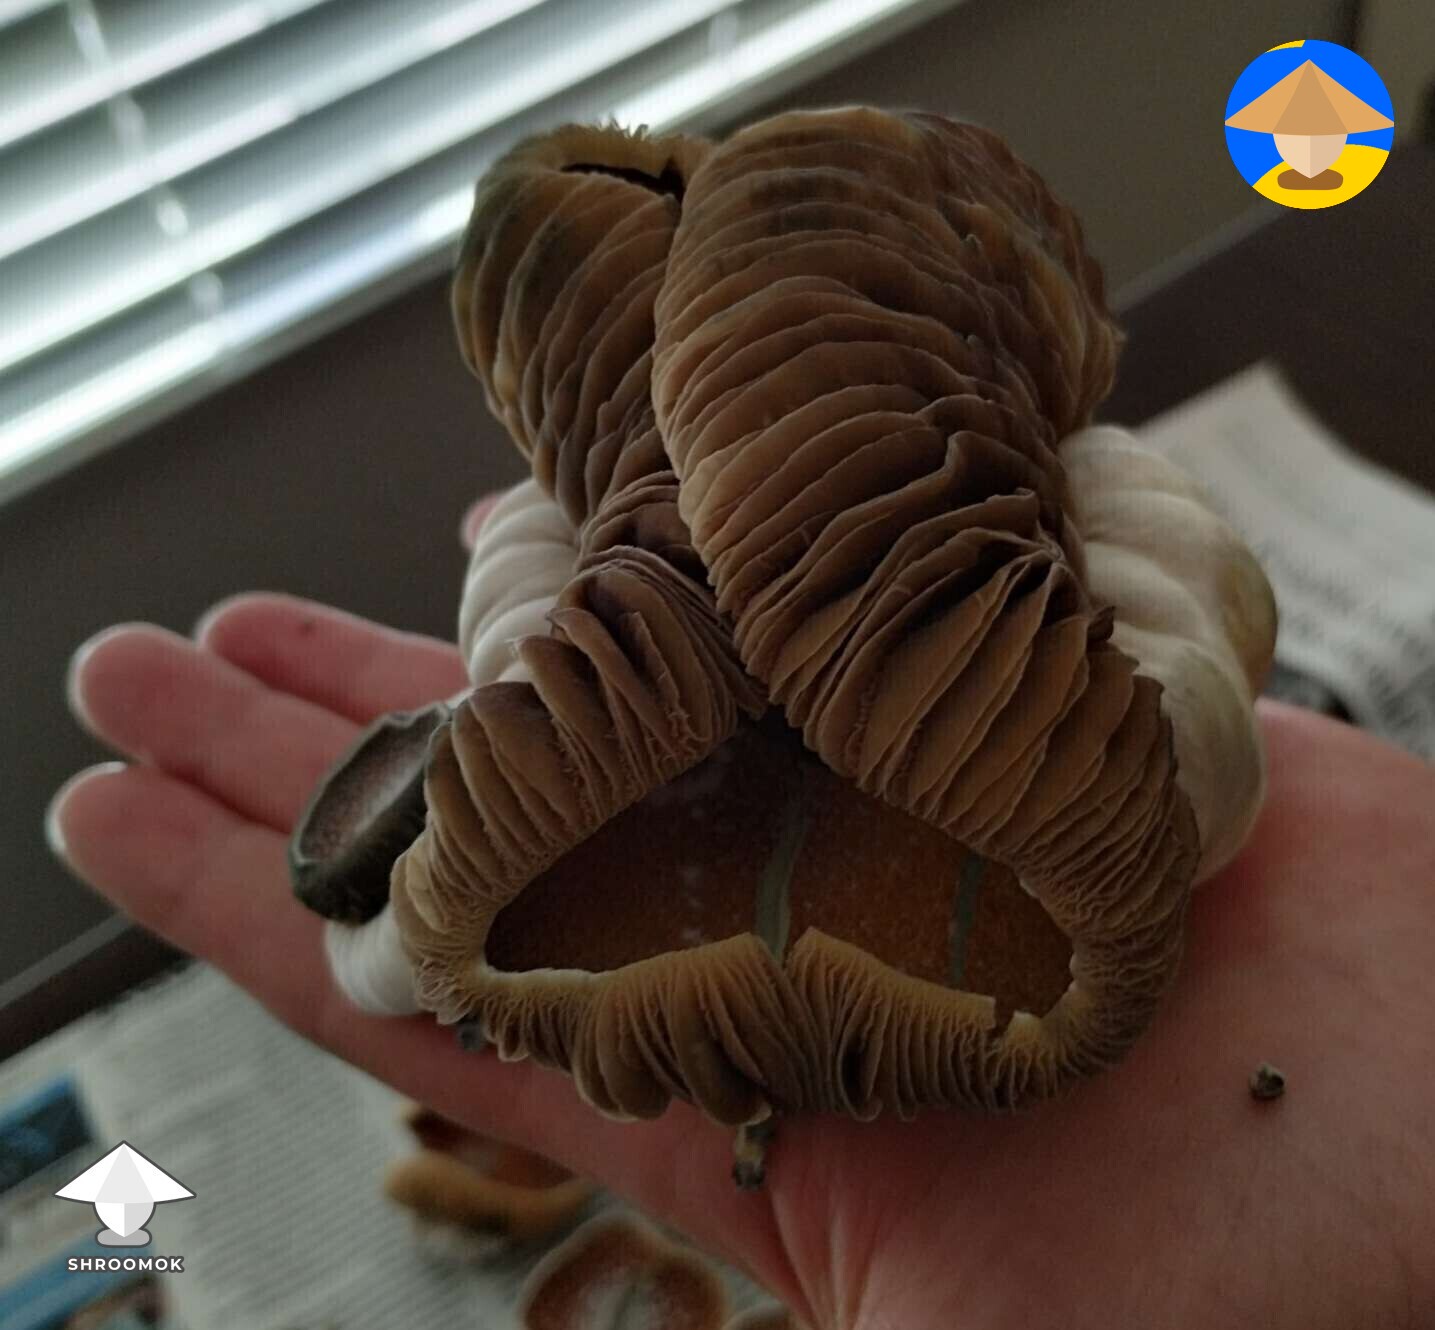 KSSS - Koh Samui Super Strain cool mutated mushrooms